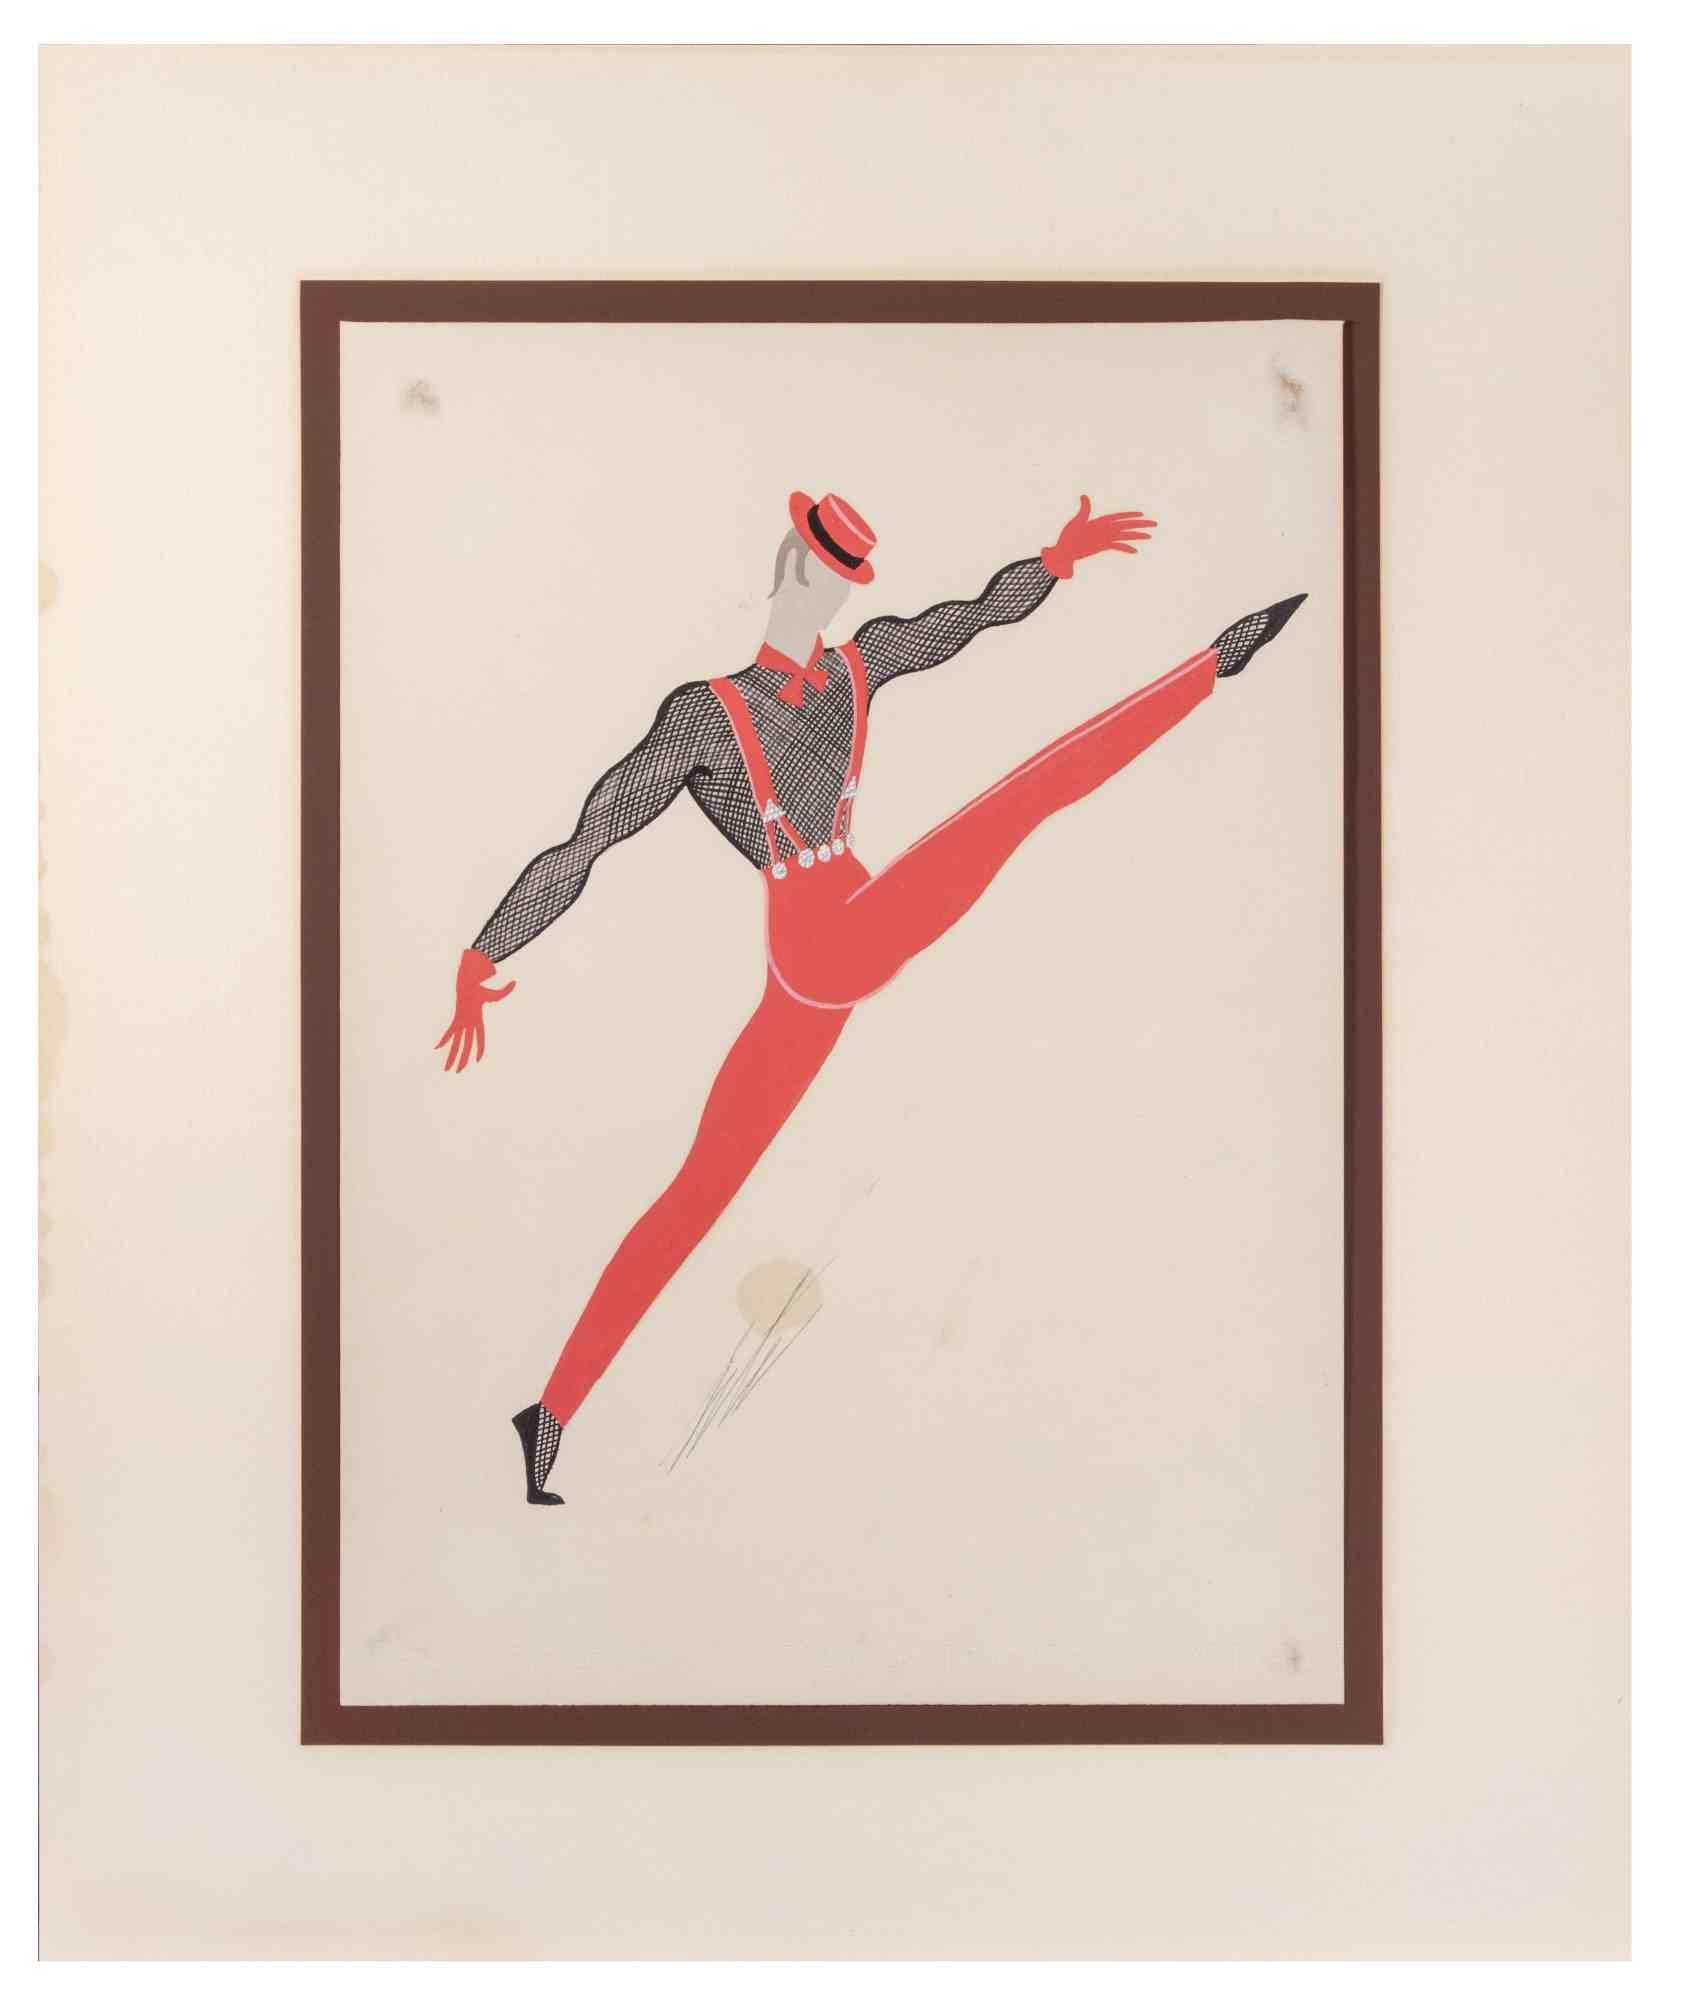 Die Tänzerin ist ein modernes Kunstwerk, das in den 1970er Jahren von Erté (Romain de Tirtoff) geschaffen wurde.

Gemischte Temperamalerei auf Papier.

Handsigniert am unteren Rand.

Provenienz: Koll. G. Carandente, Rom 

Romain de Tirtoff (23.